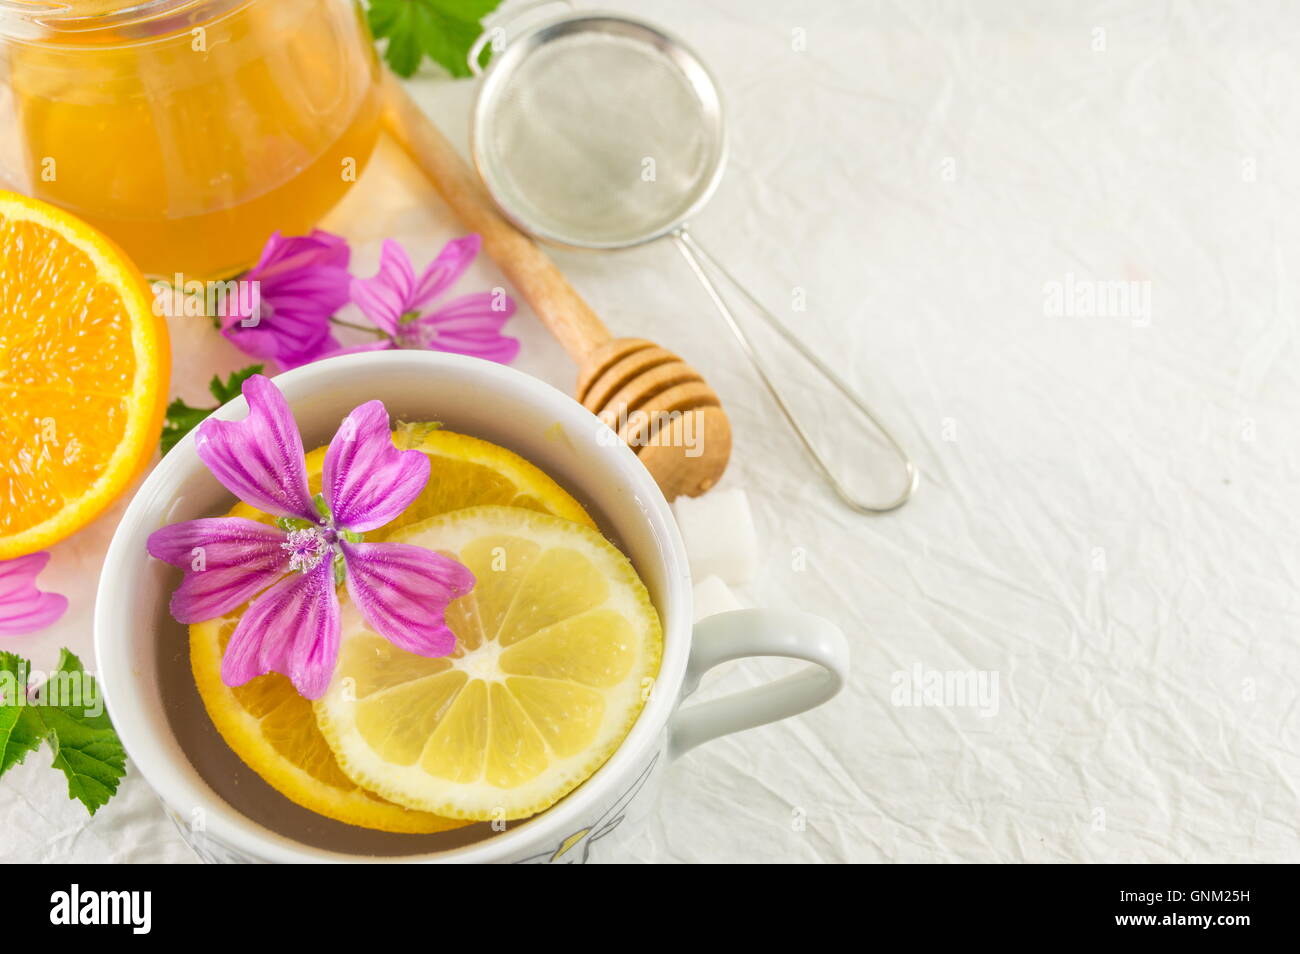 Malva sylvestris, mallow, tea with lemon and fresh flowers Stock Photo